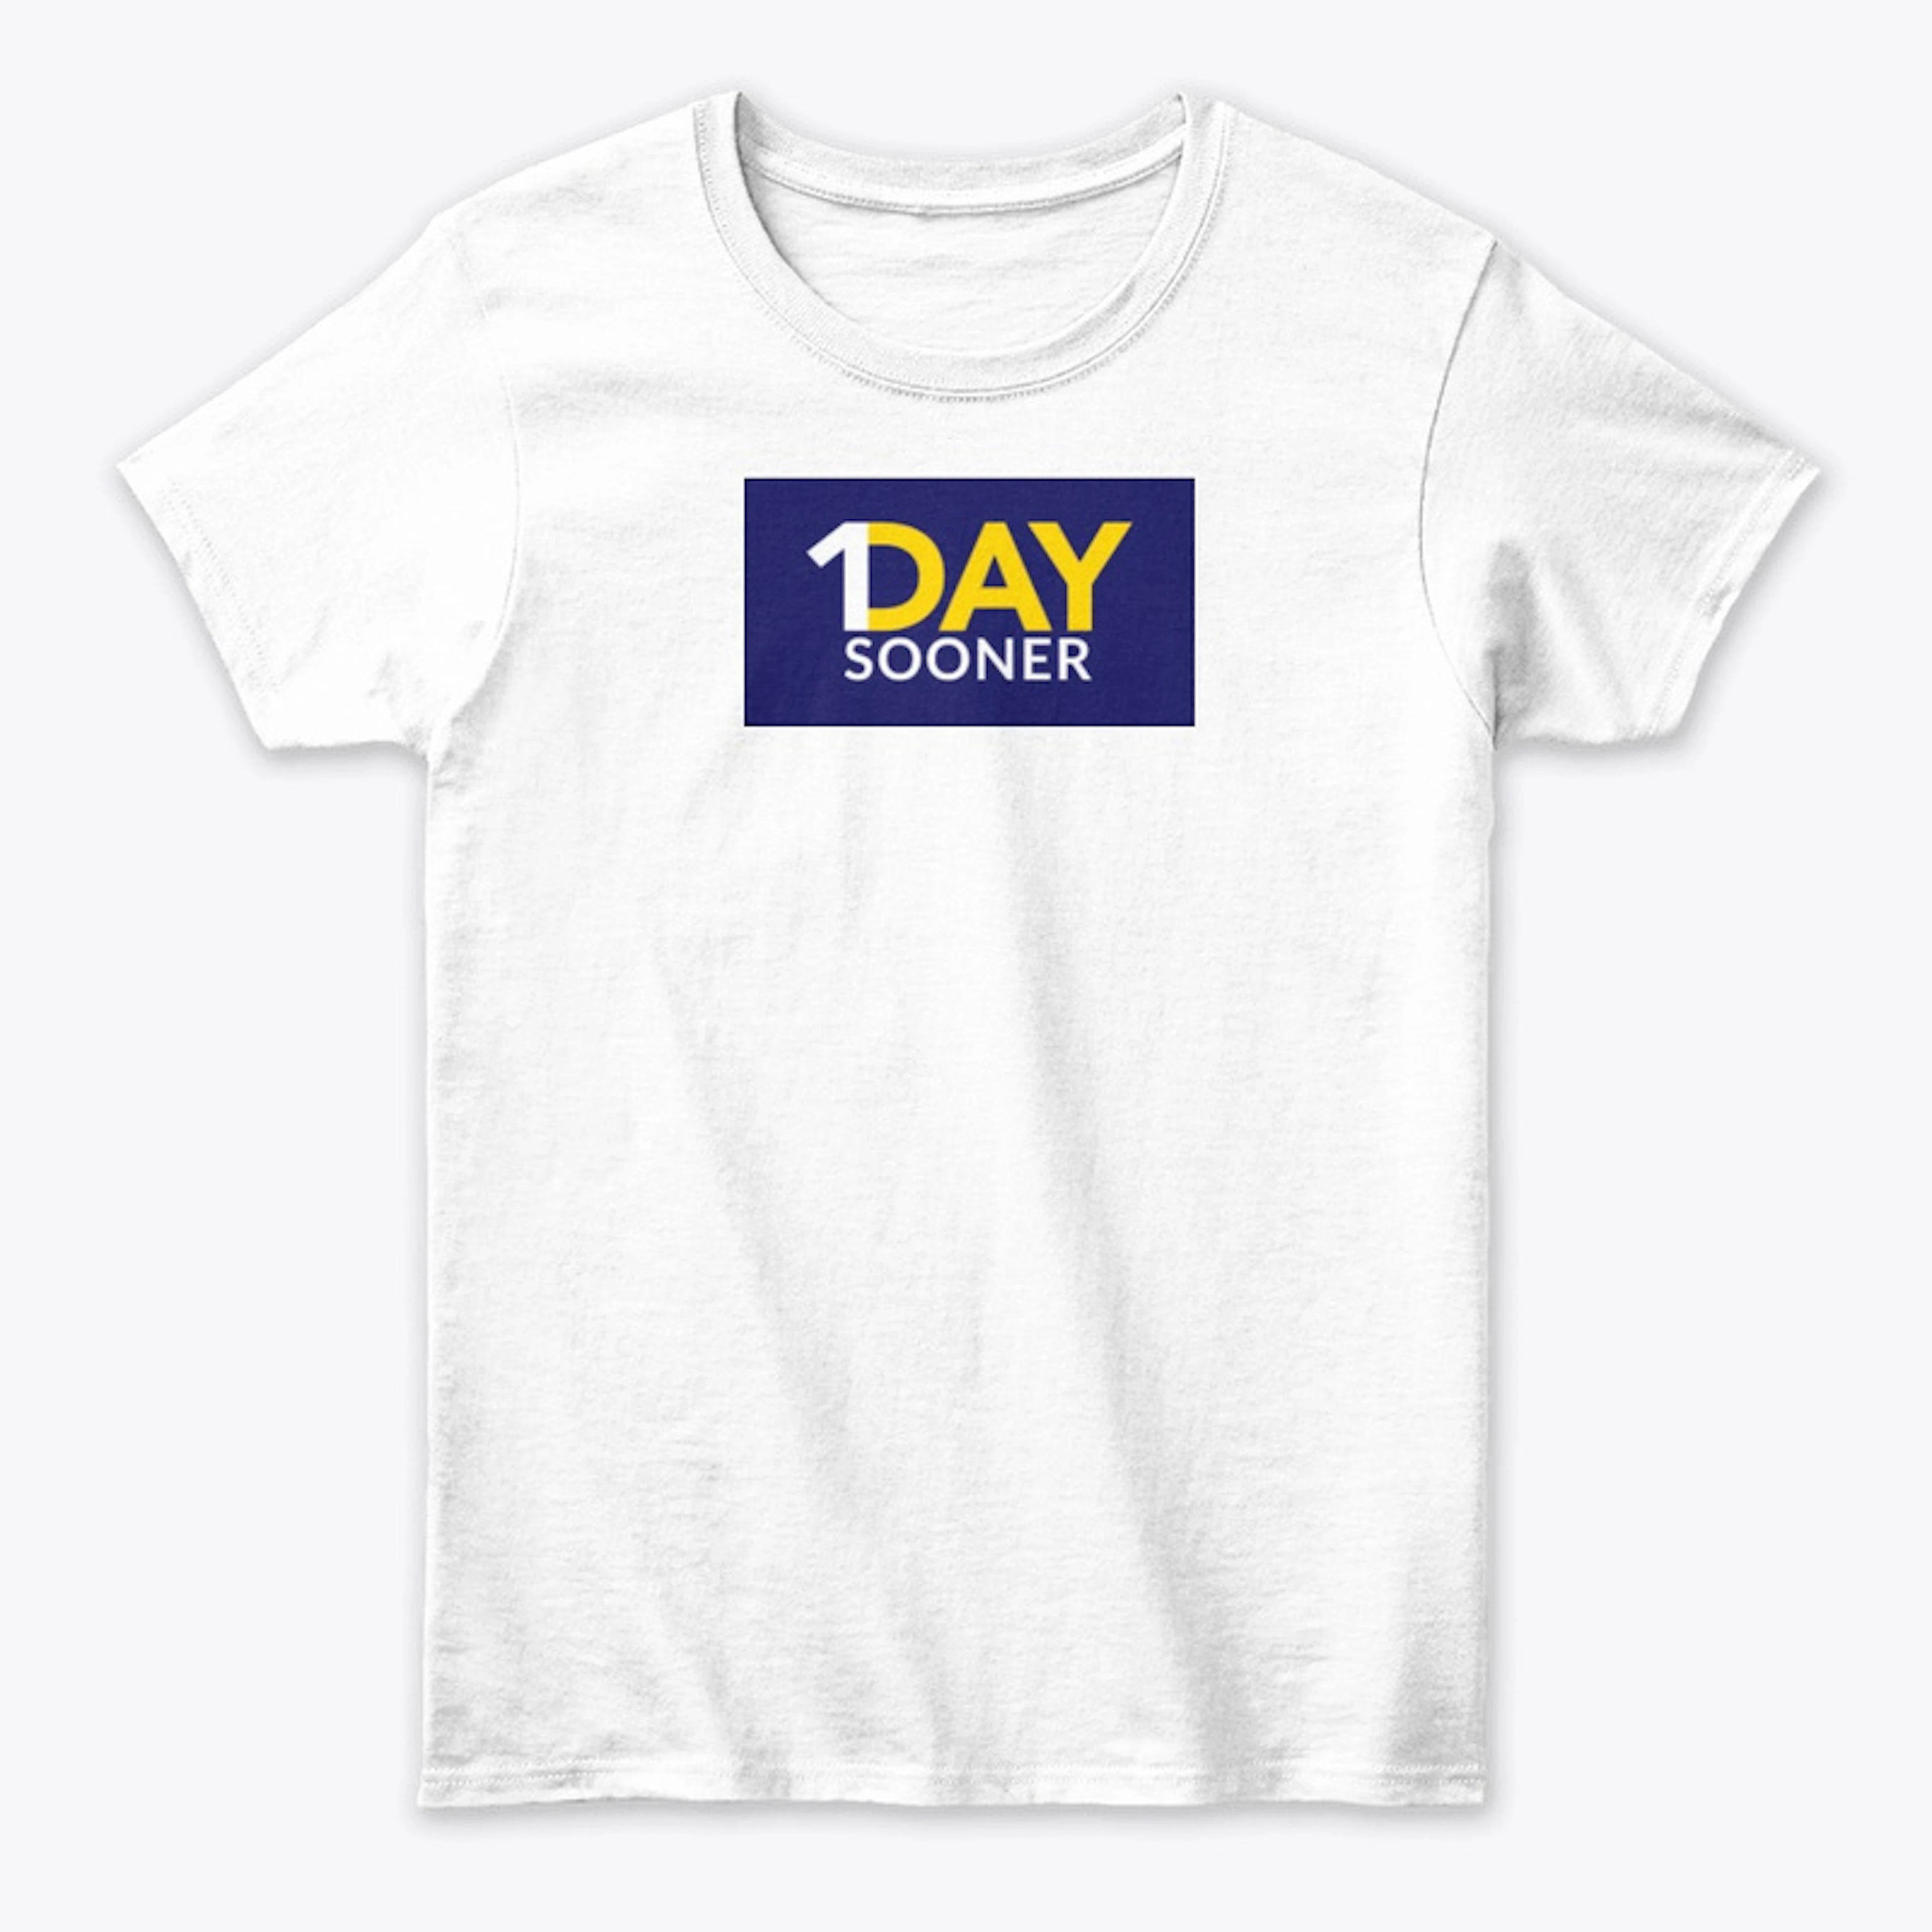 1Day Sooner  T-Shirt 2